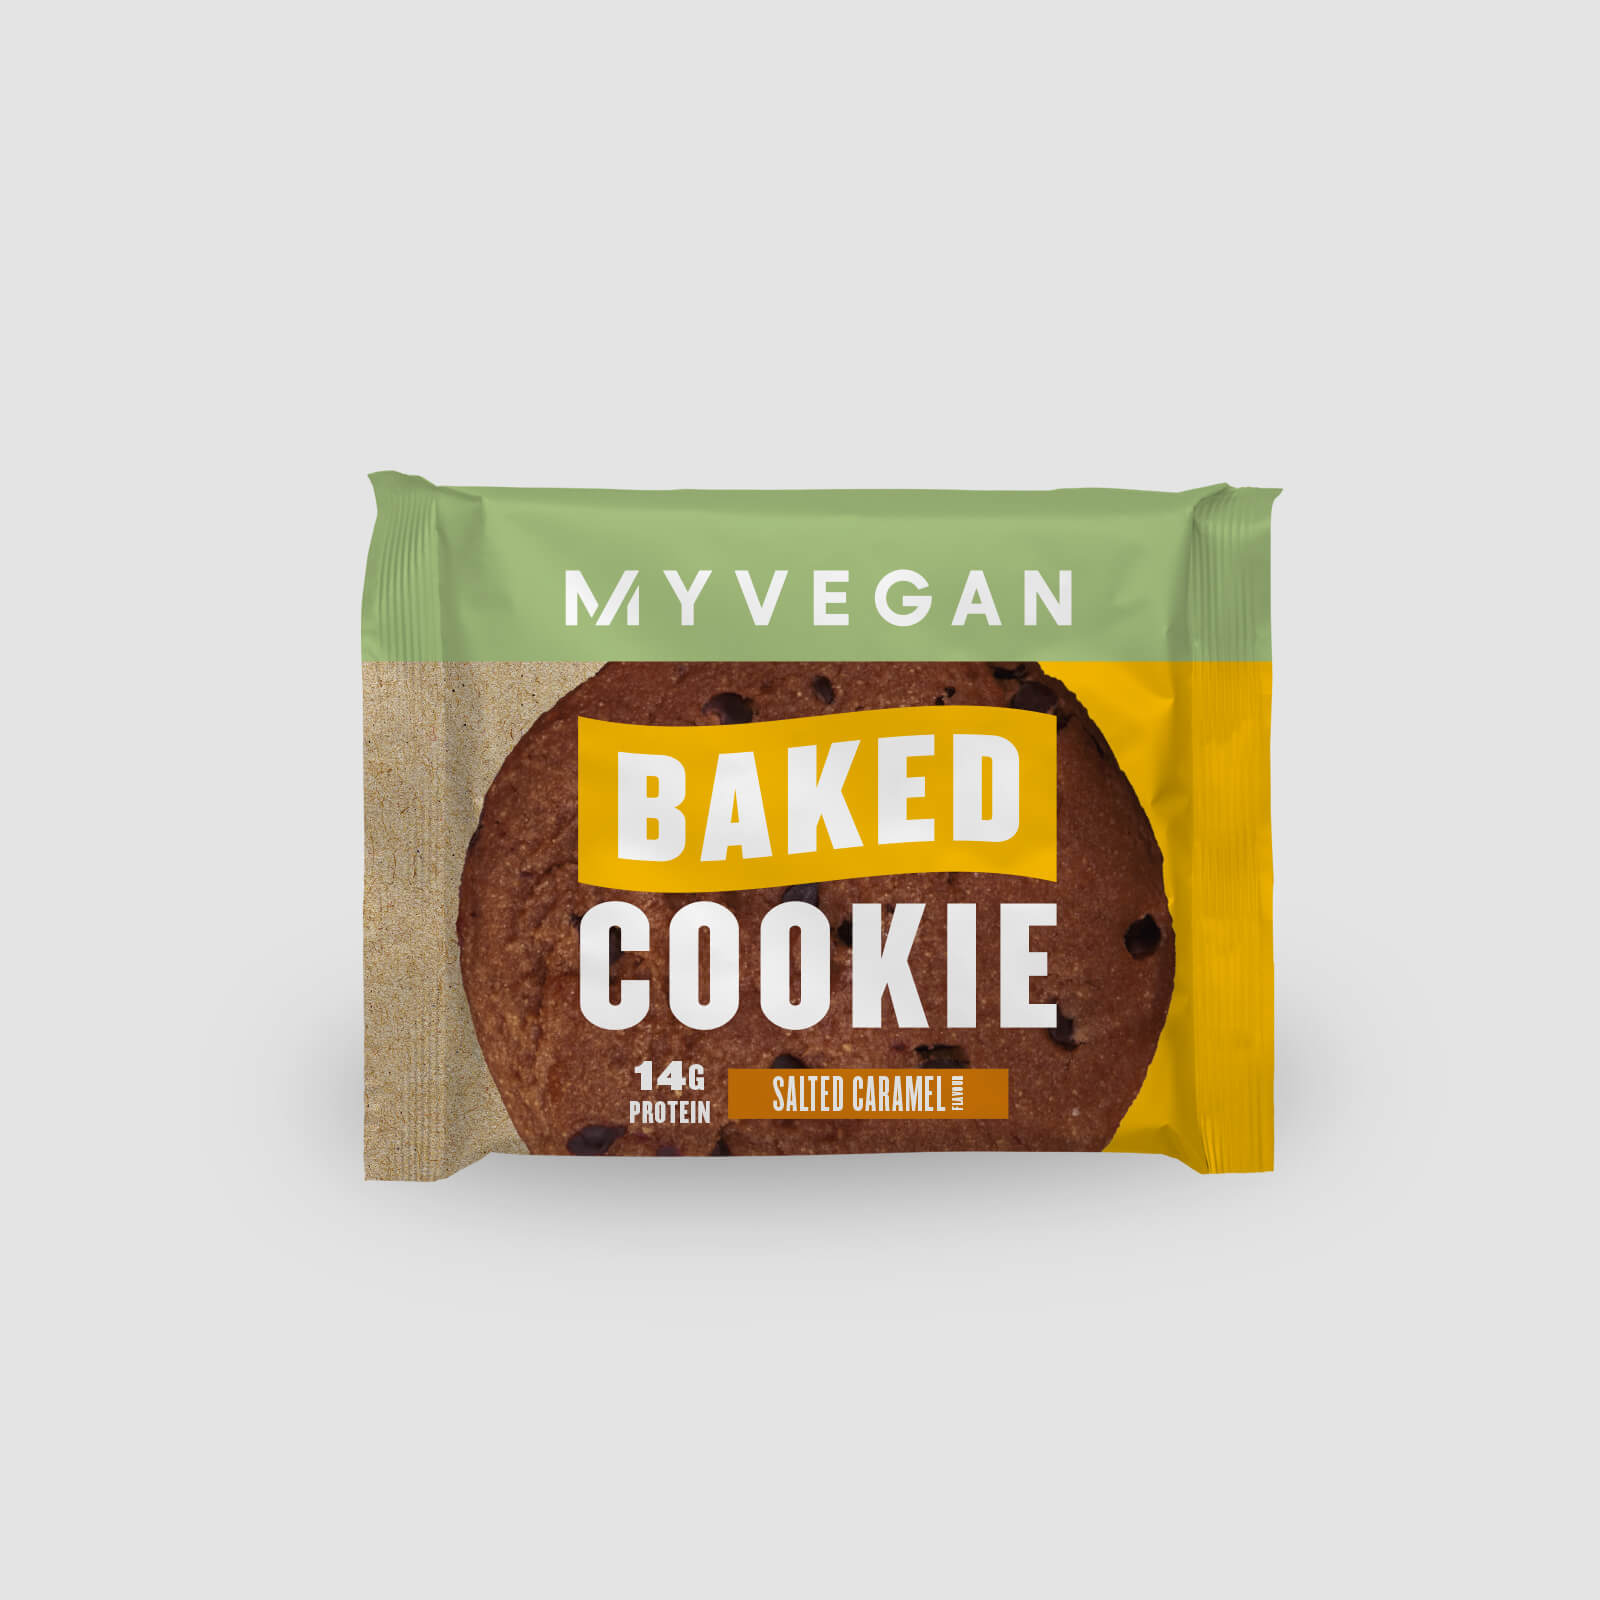 Myprotein Vegan Protein Cookie (Sample) - Salted Caramel